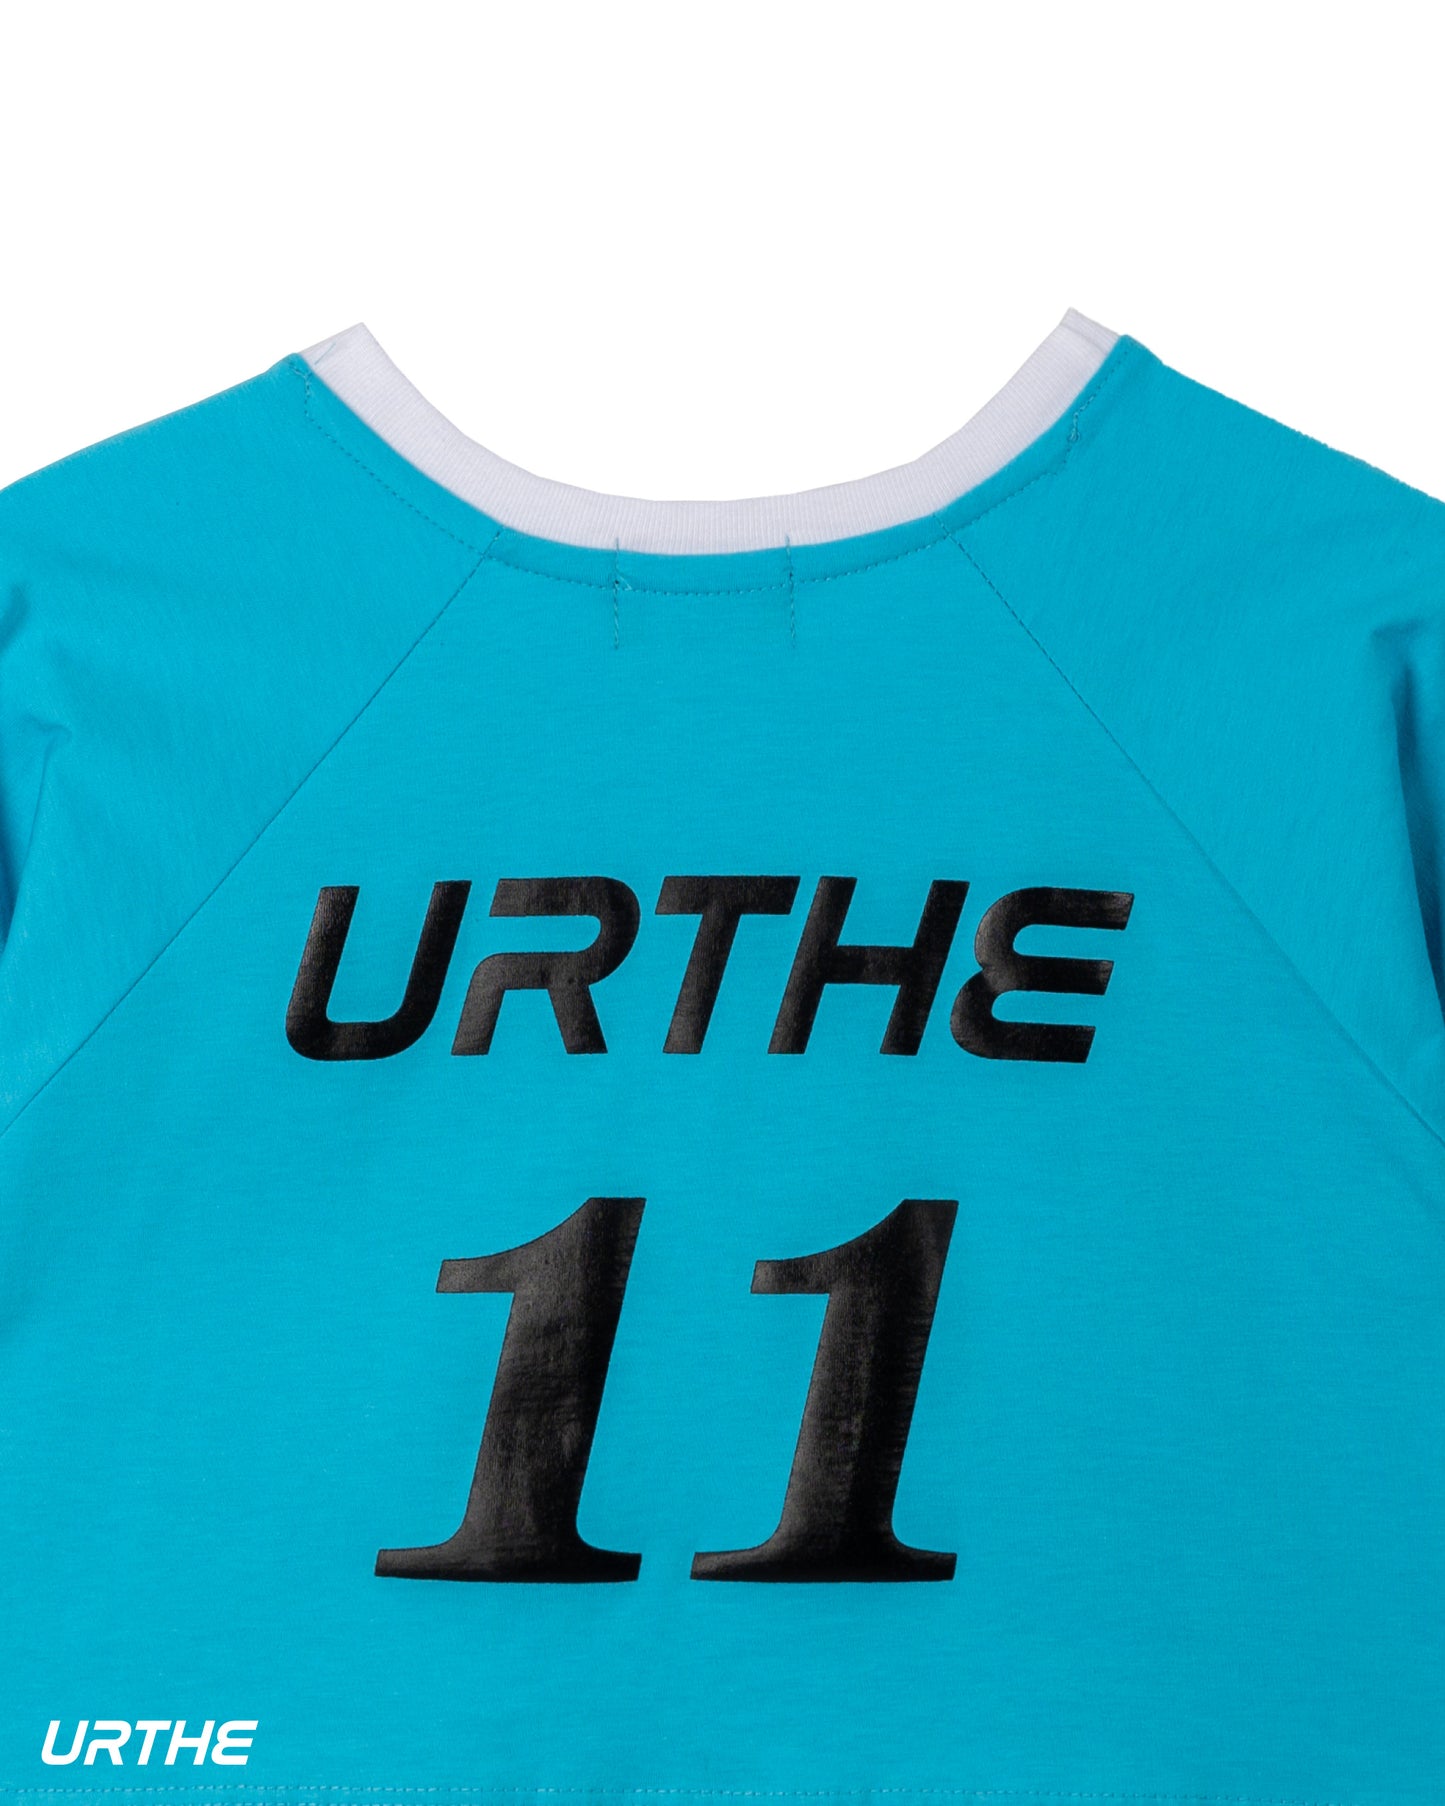 URTHE - เสื้อครอป เเขนสั้น สกรีนลาย รุ่น SLOPE CROP FC URTHE